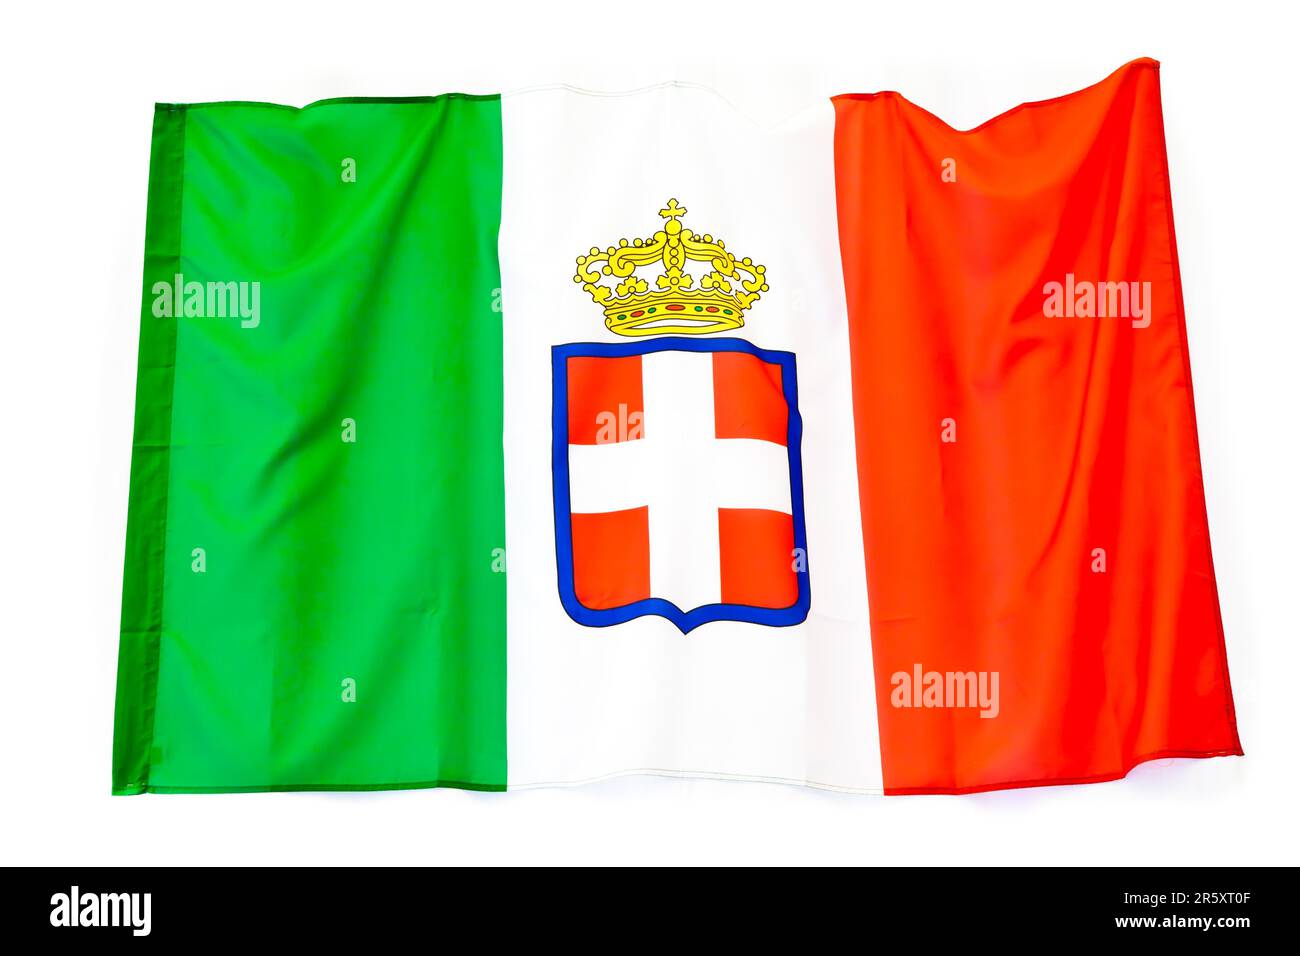 Variante drapeau du Royaume d'Italie, adoptée à partir de 1861, famille royale de Savoie Banque D'Images